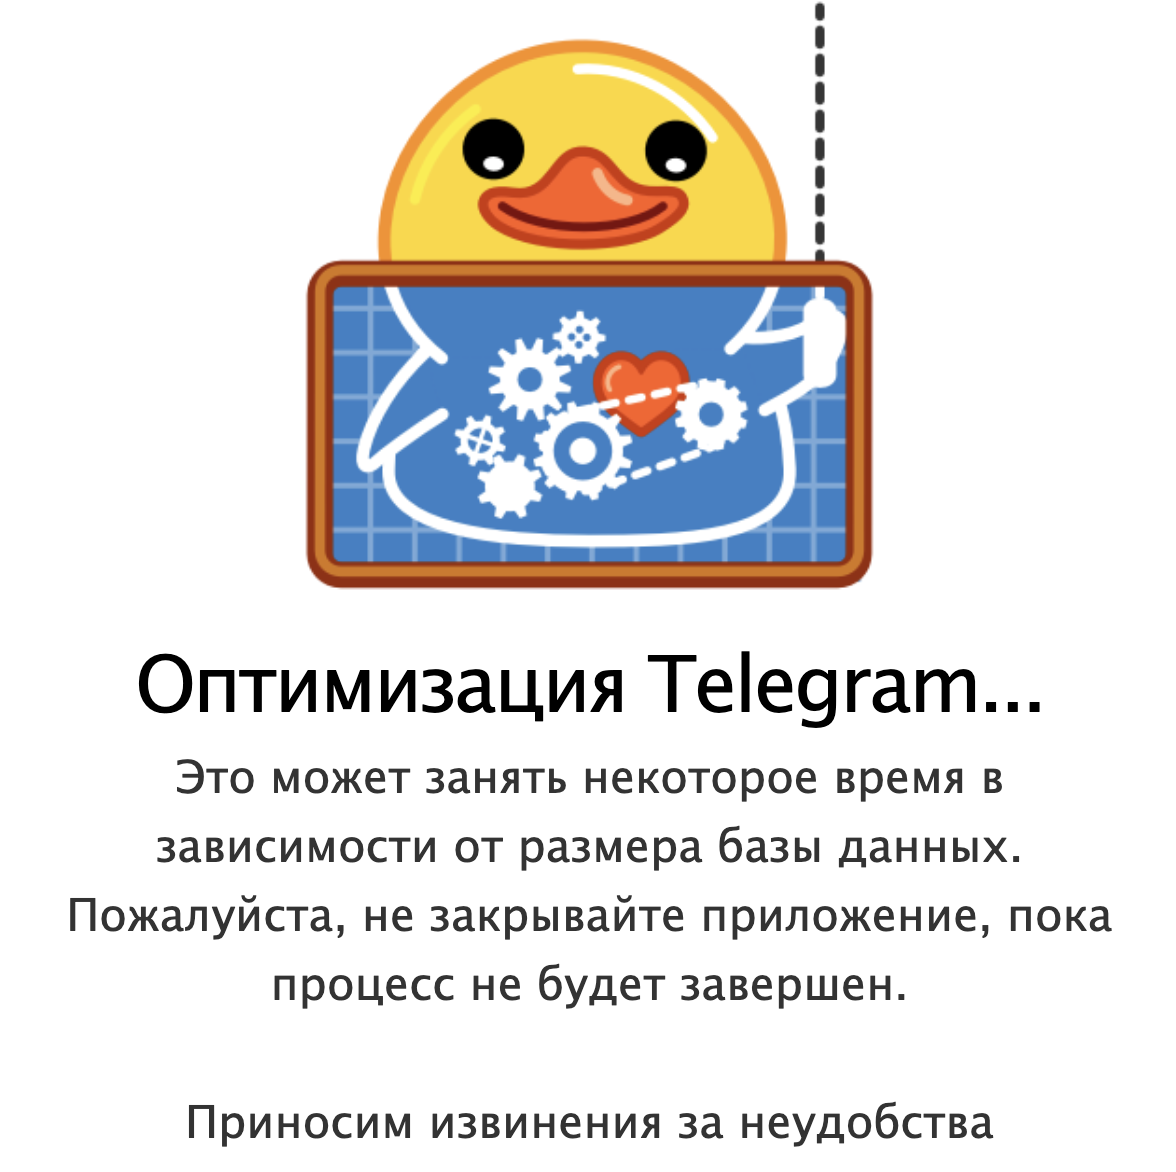 Языки в телеграмм с матами скачать фото 72